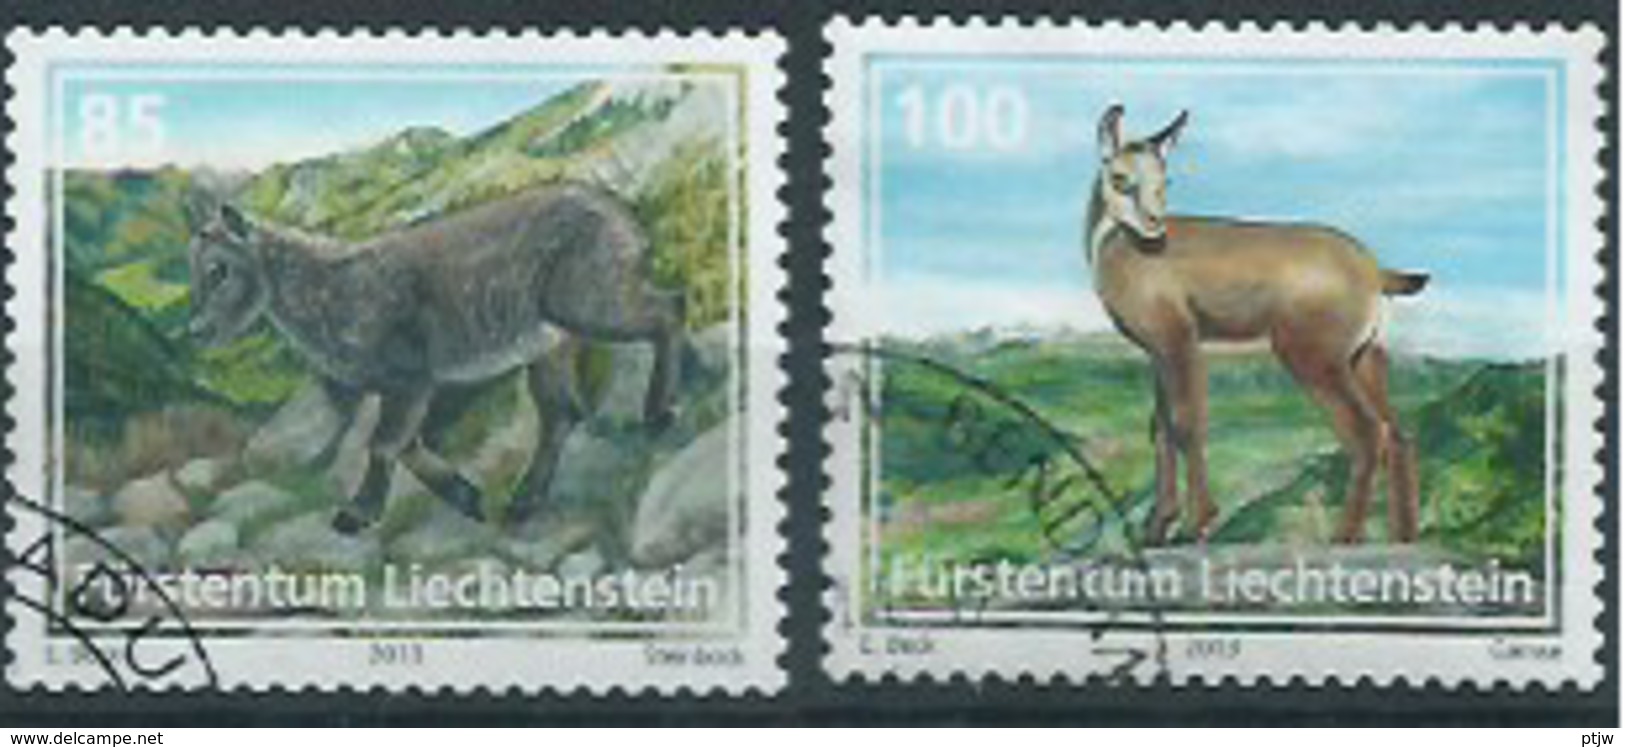 Stamp Of Liechtenstein 2013: Animals 0.85 + 1.00 Used - Nature - Animaux - Oblitere - Usati